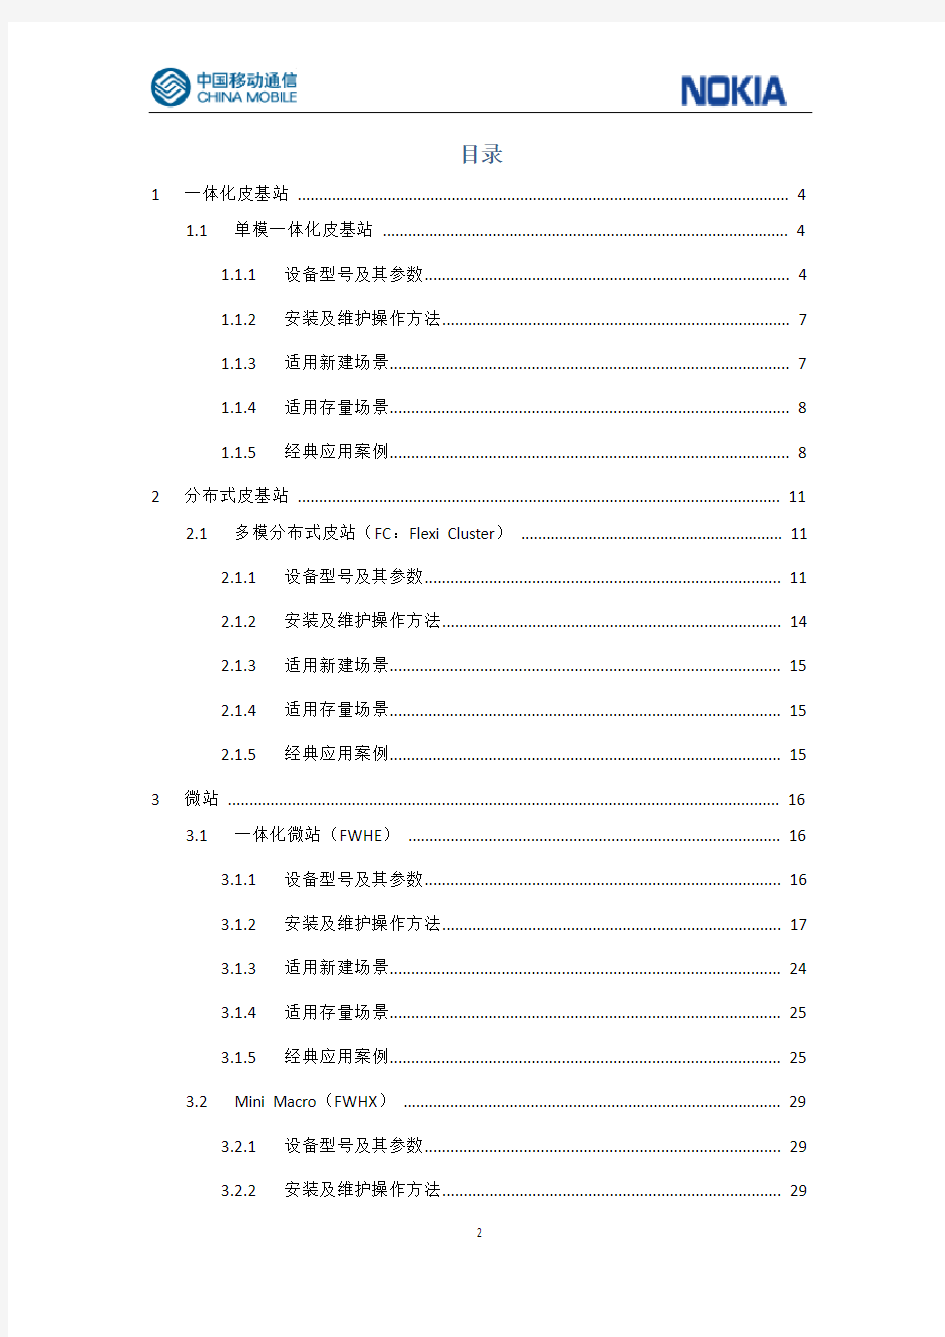 中国移动新型室分新技术(小基站)应用场景指导手册(诺基亚)V3.0